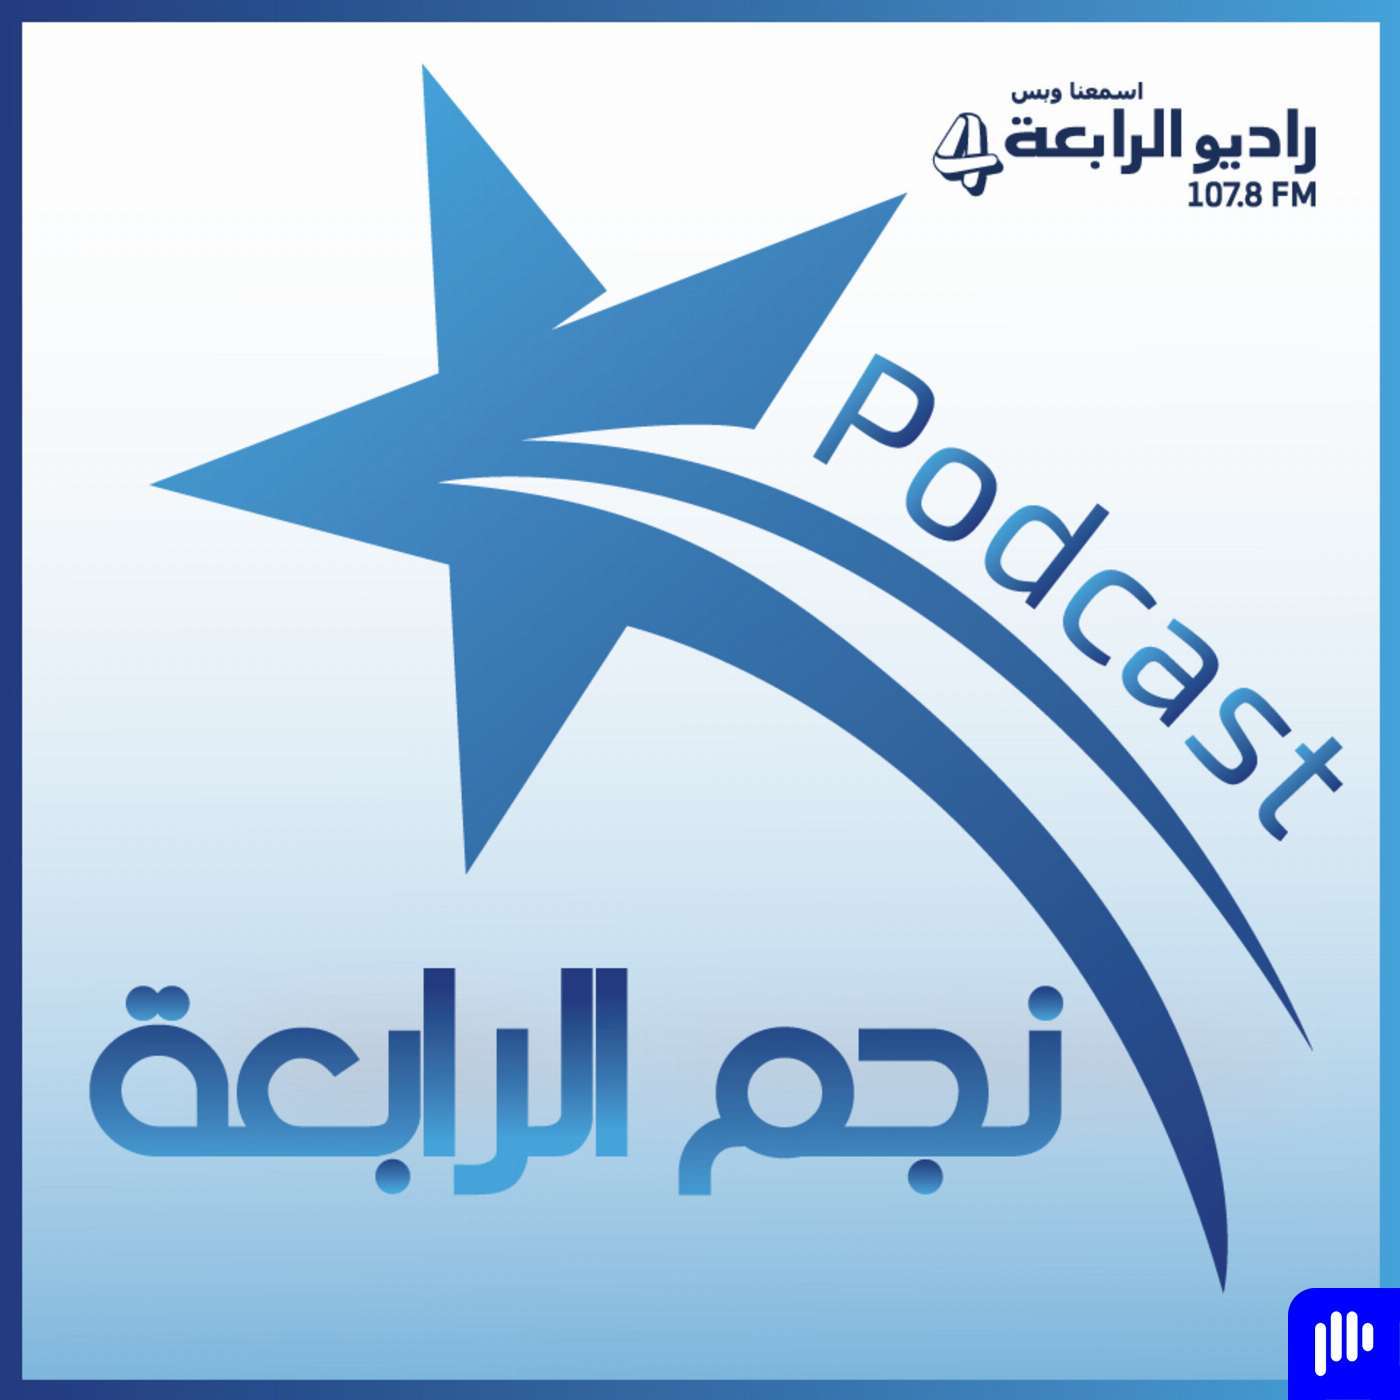 محمد عبدالرحمن يتحدث لراديو الرابعة تحدث لراديو الرابعة عن سبب نجاحه عن باقي زملائه في مسرح مصر